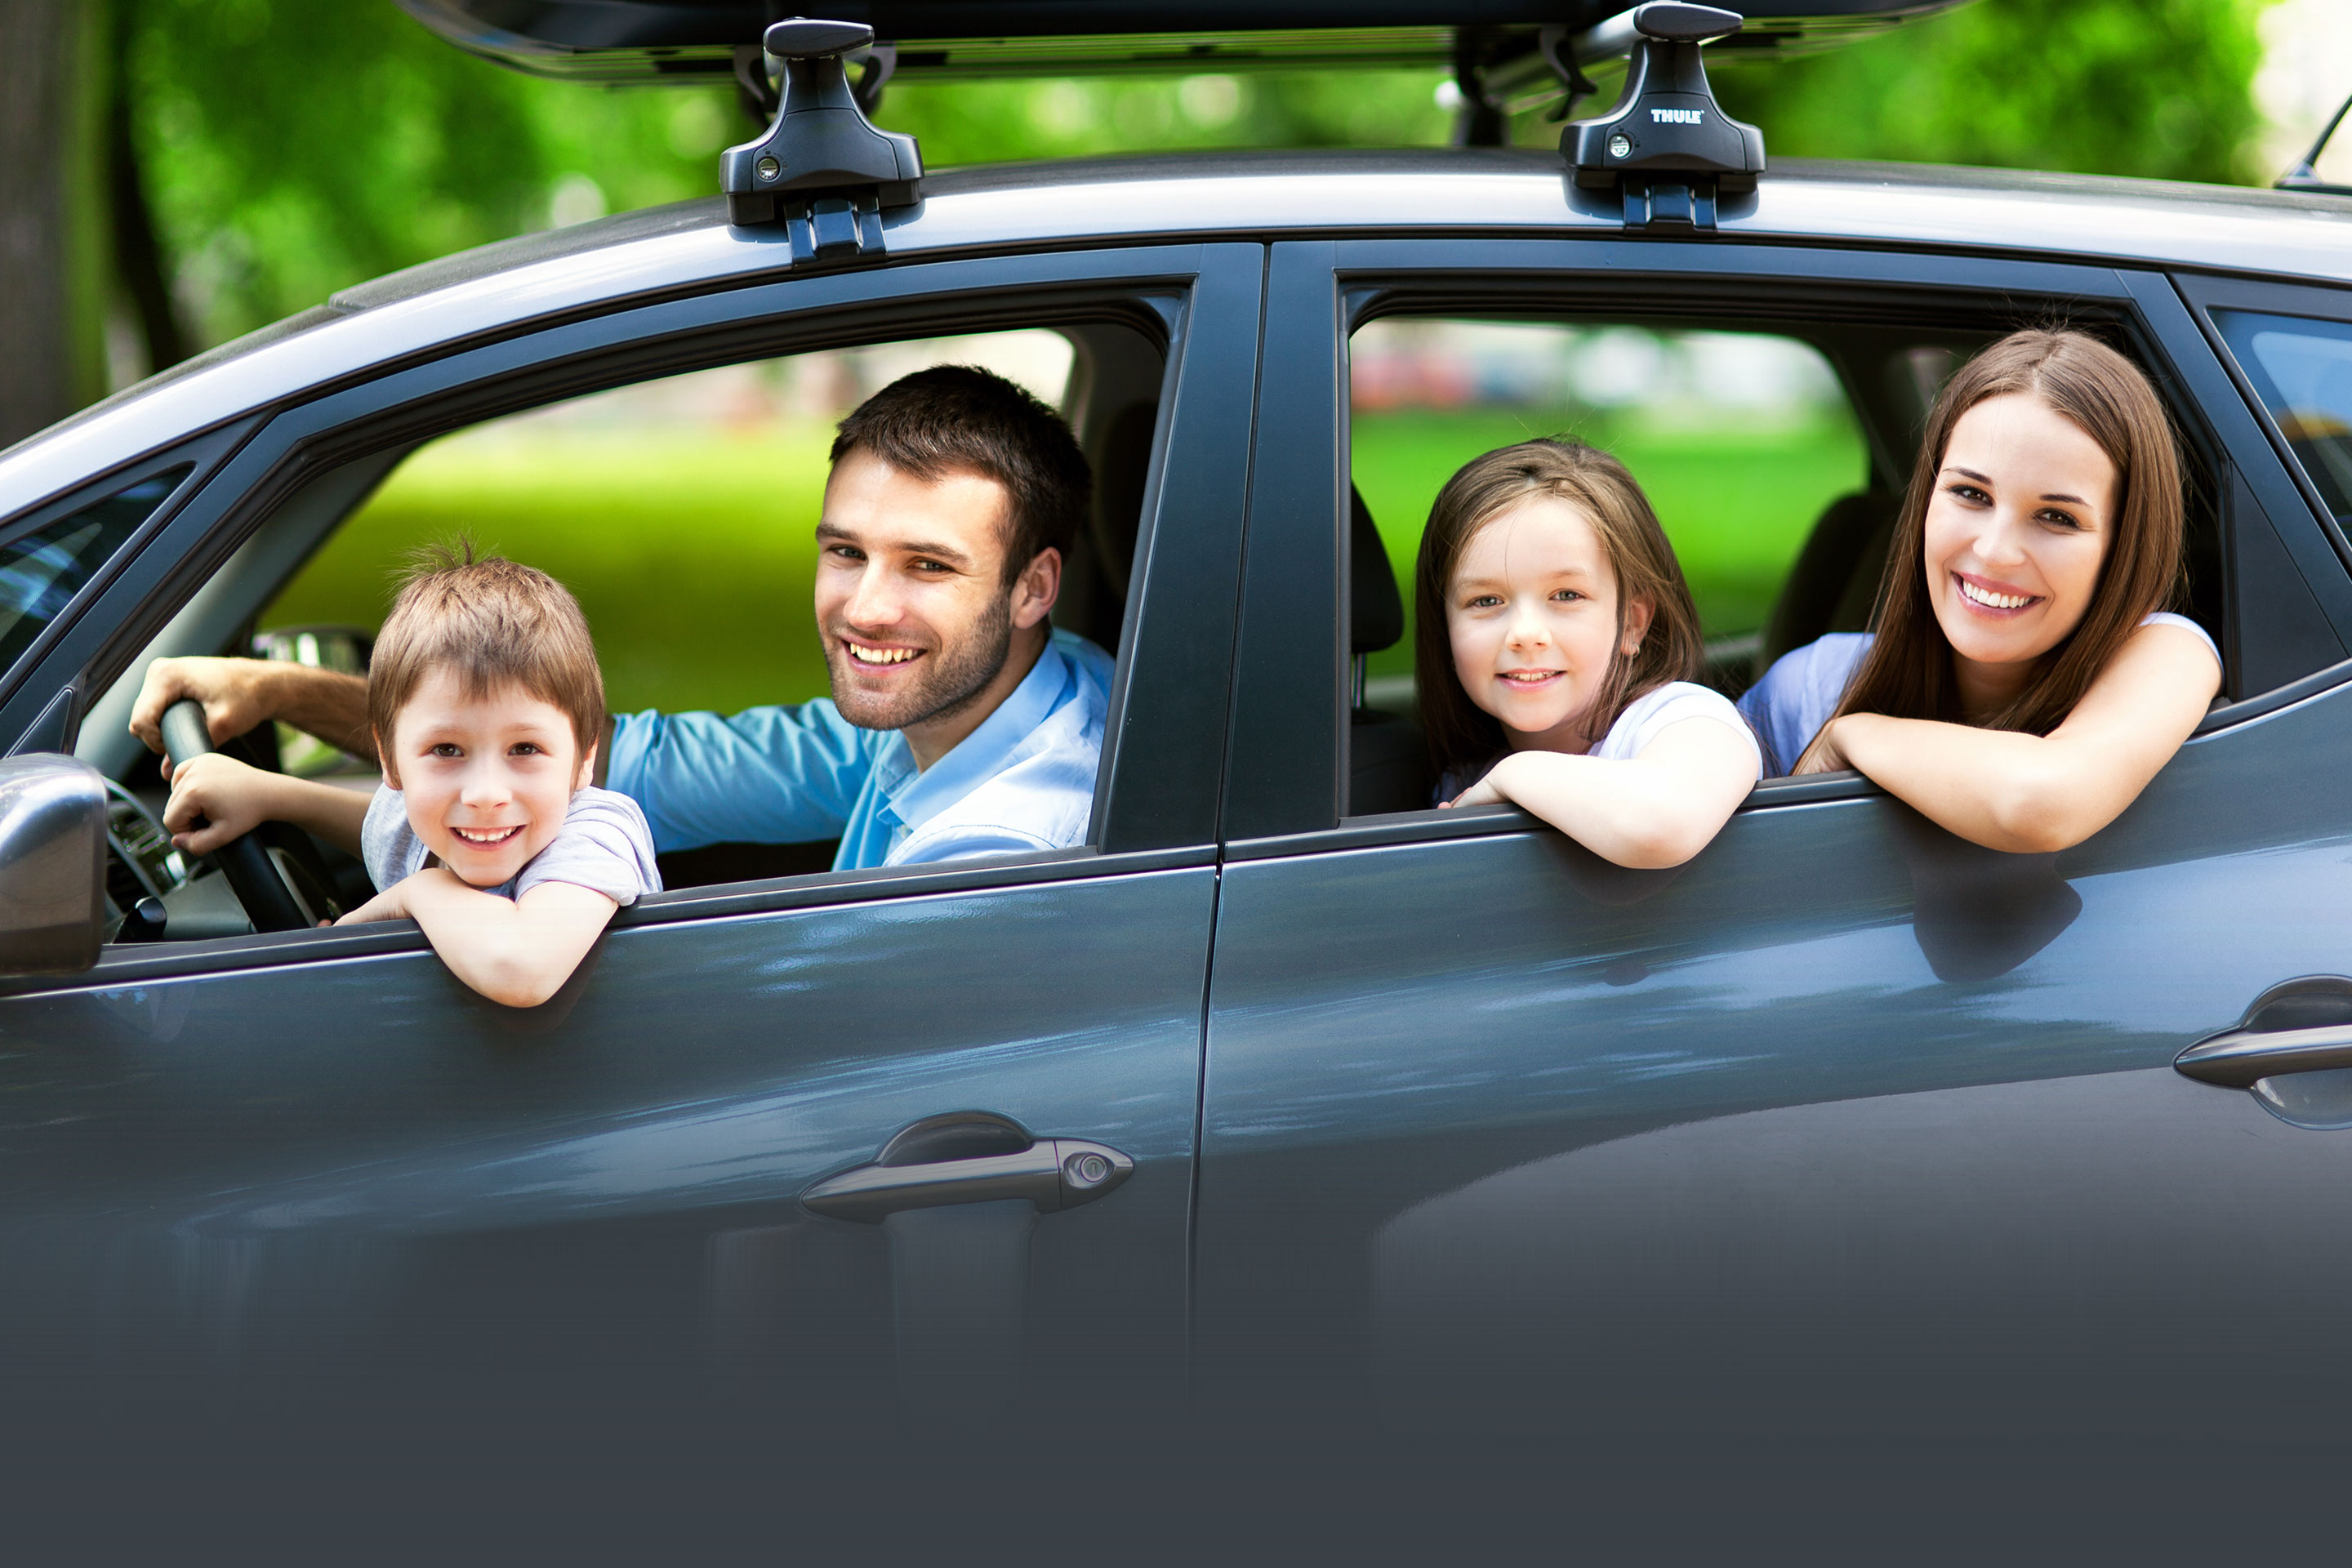 Госпрограмма на покупку автомобиля семейный автомобиль. Семейный автомобиль. Семейная машина. Семья в машине. Семейная машина для путешествий.